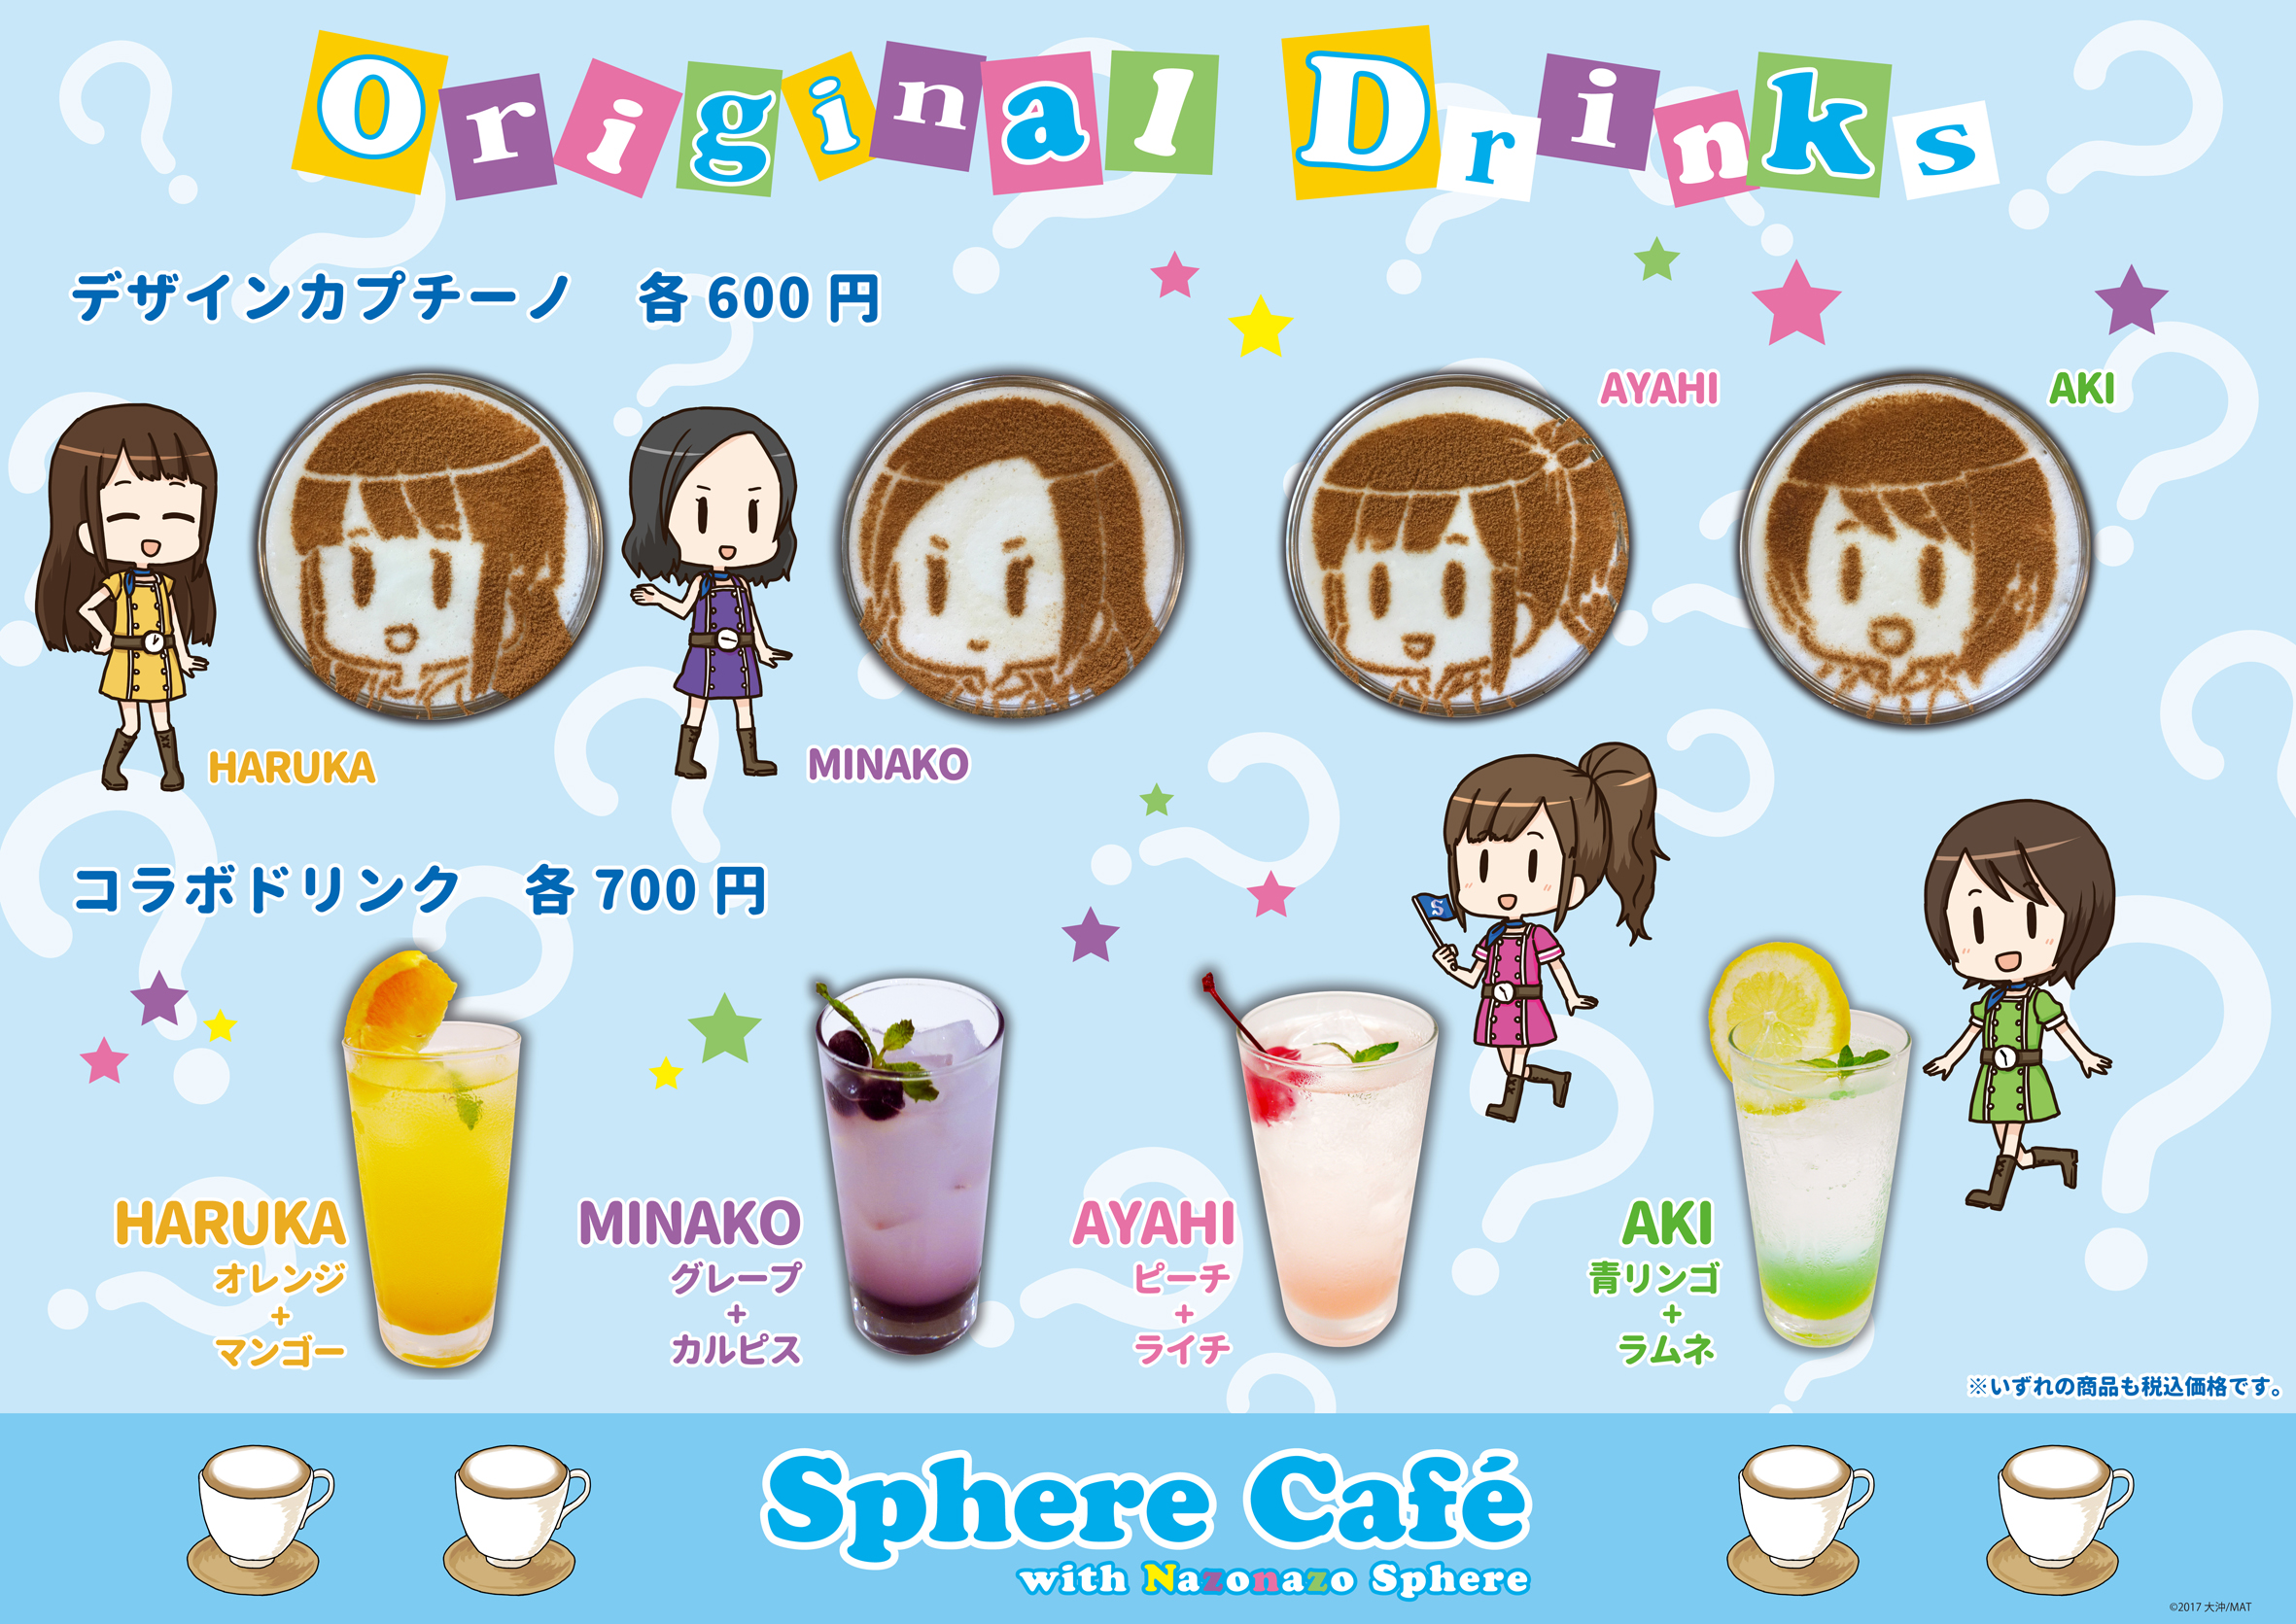 Sphere Cafe with ȂȂXtBAJtFj[̂ē